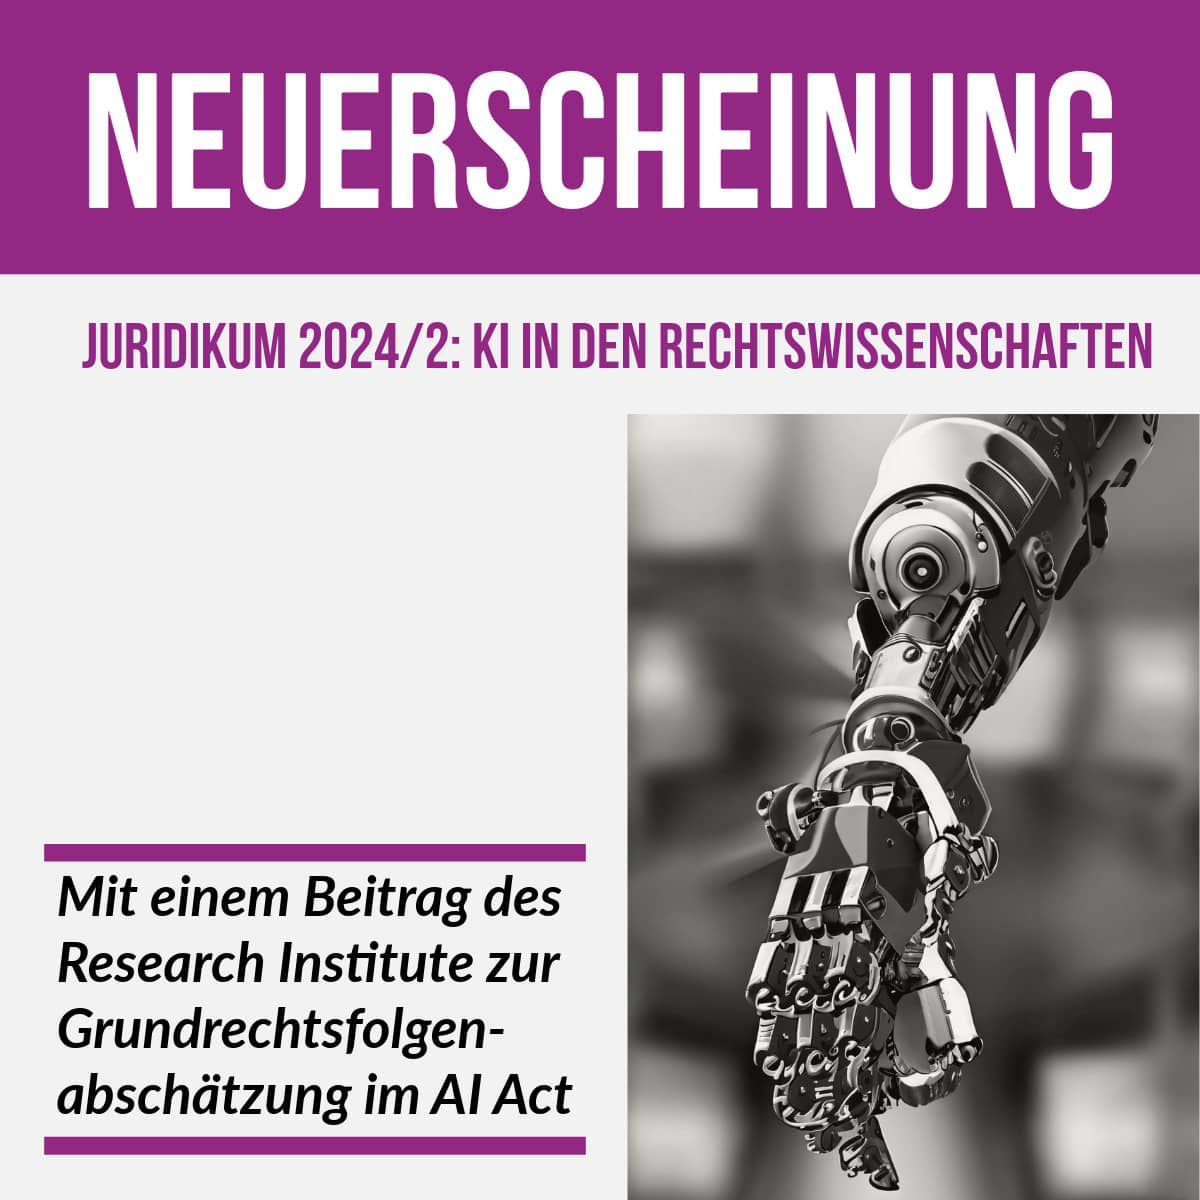 Neuerscheinung Zeitschrift juridikum 20242 Thema „Künstliche Intelligenz in den Rechtswissenschaften“ Beitrag des Research Institute Grundrechtsfolgenabschätzung im AI Act